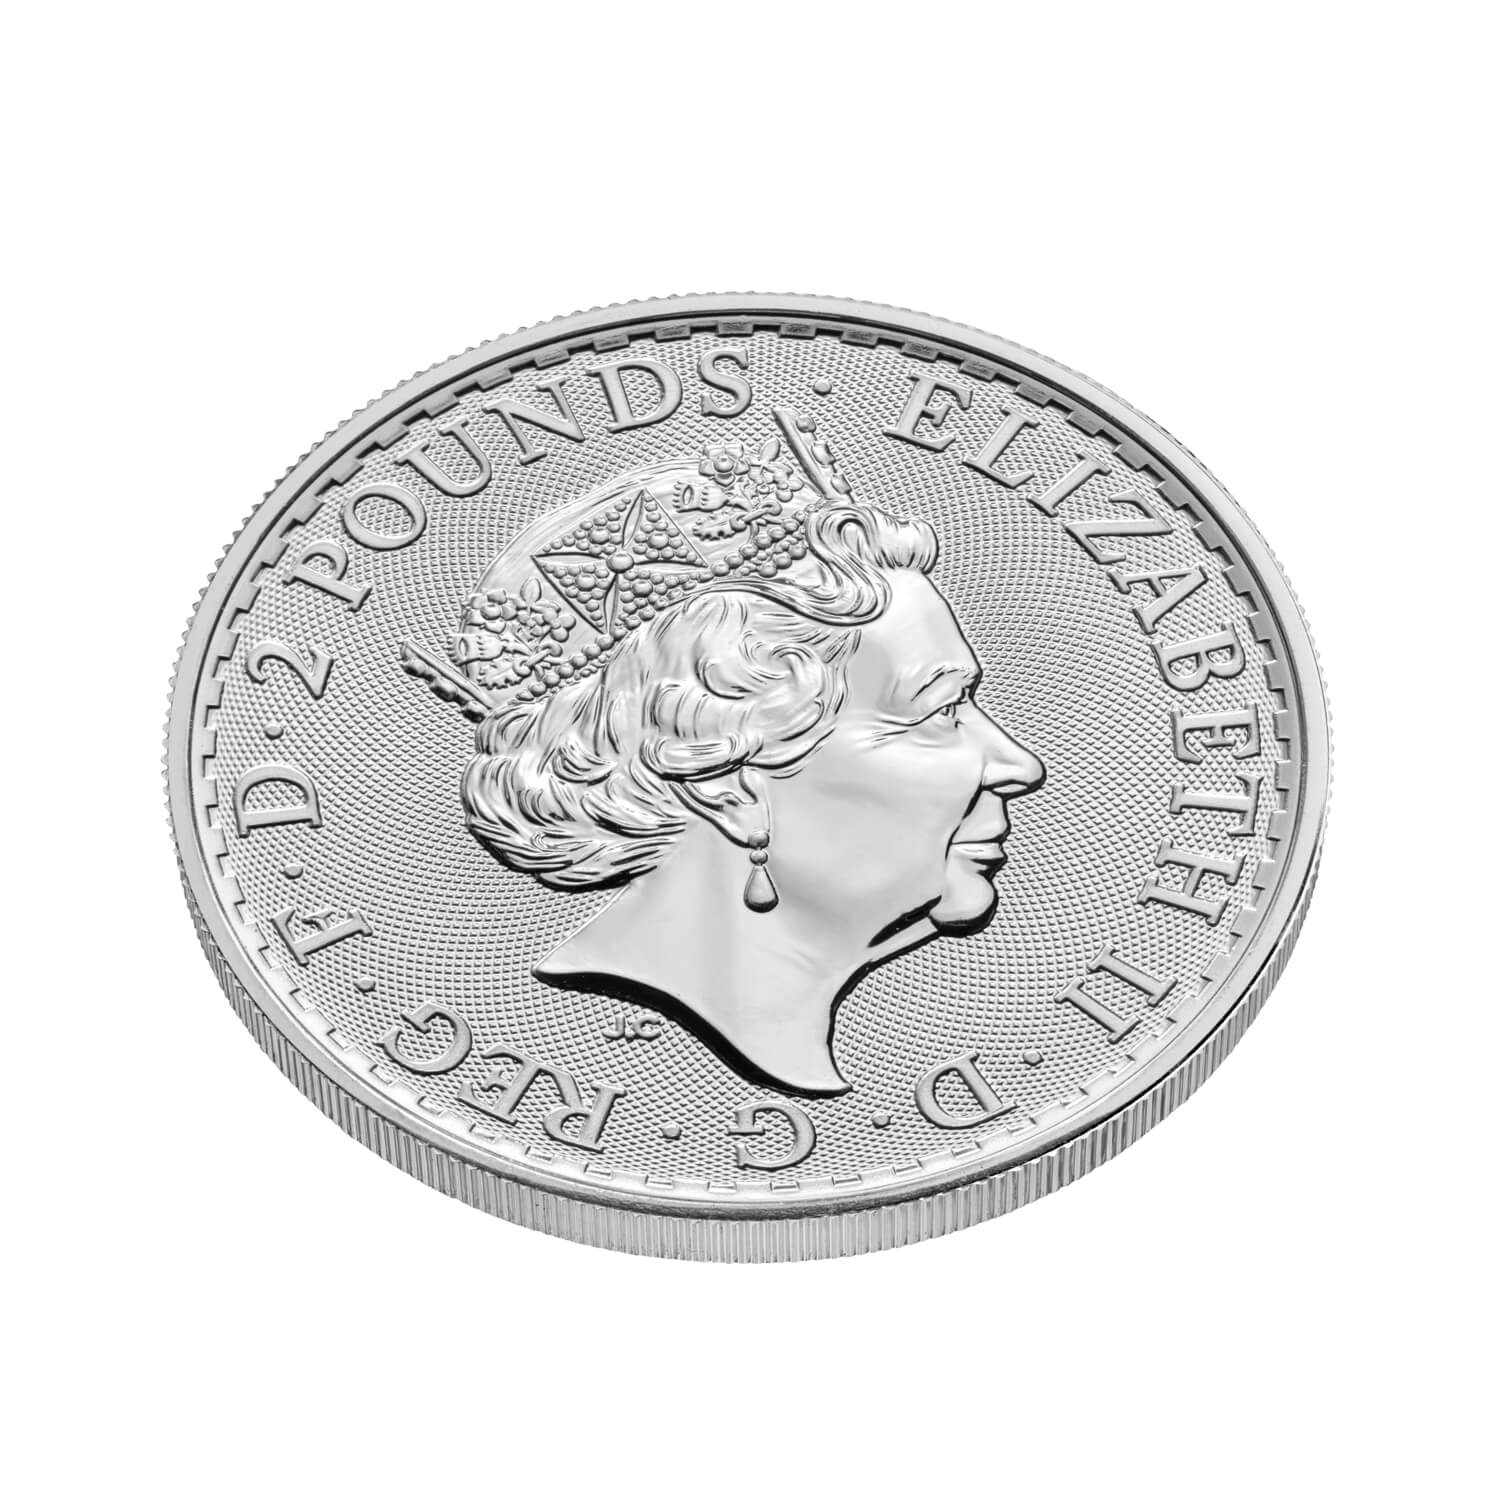 Britannia 2021 1 oz Silver Bullion Coin 25 Coin Tube | The Royal Mint